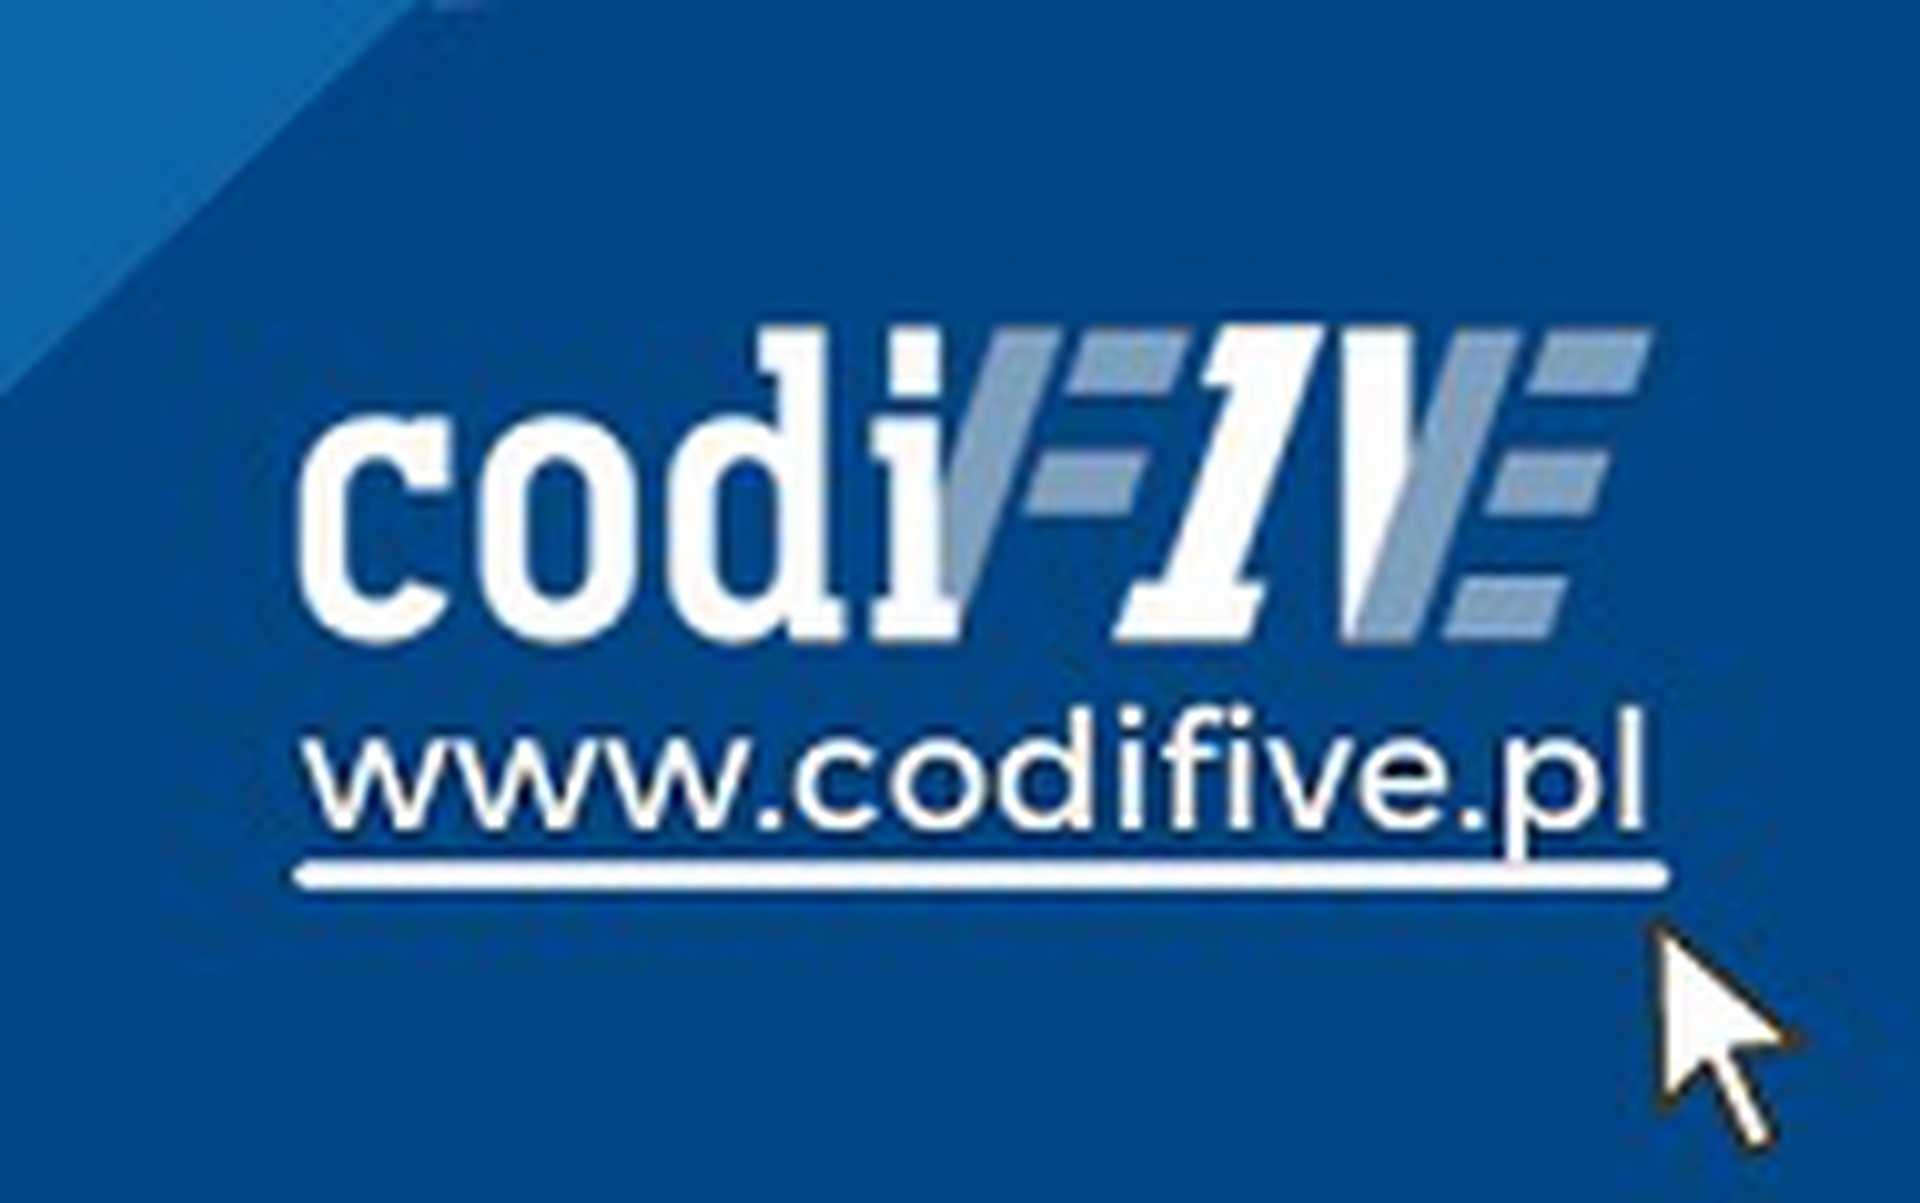 Codifive logo